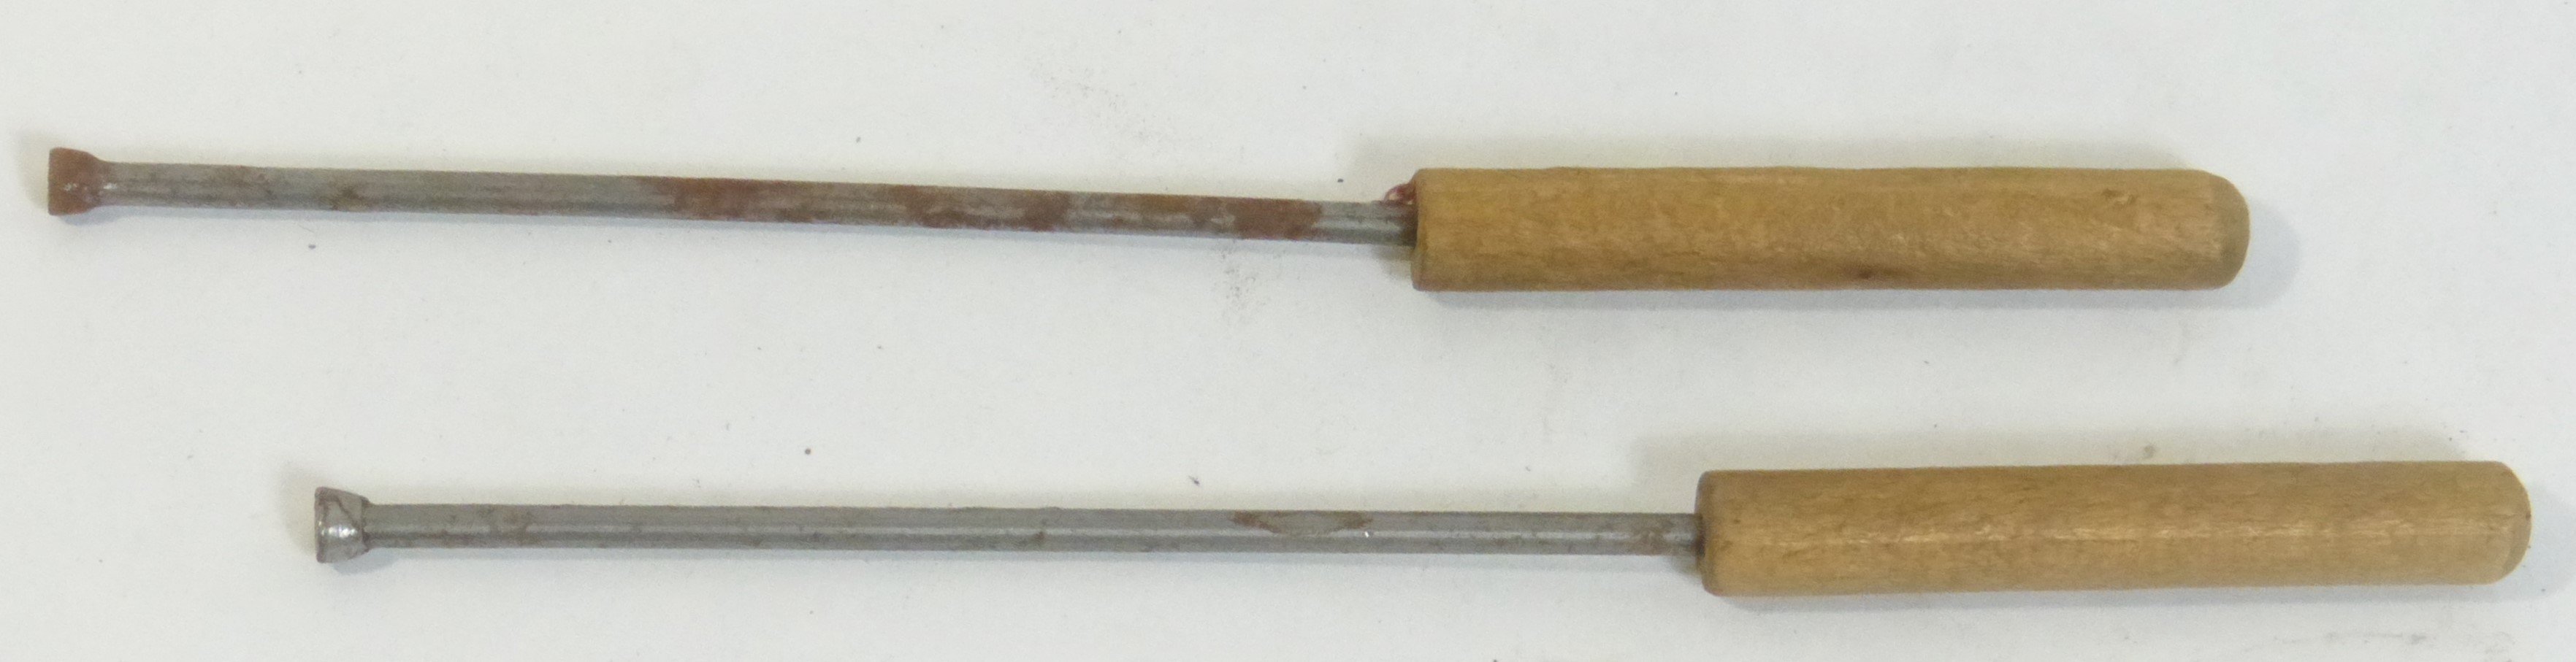 Handarbeitswerkzeug mit stumpfer Spitze (Städt. Hellweg-Museum Geseke CC BY-NC-SA)